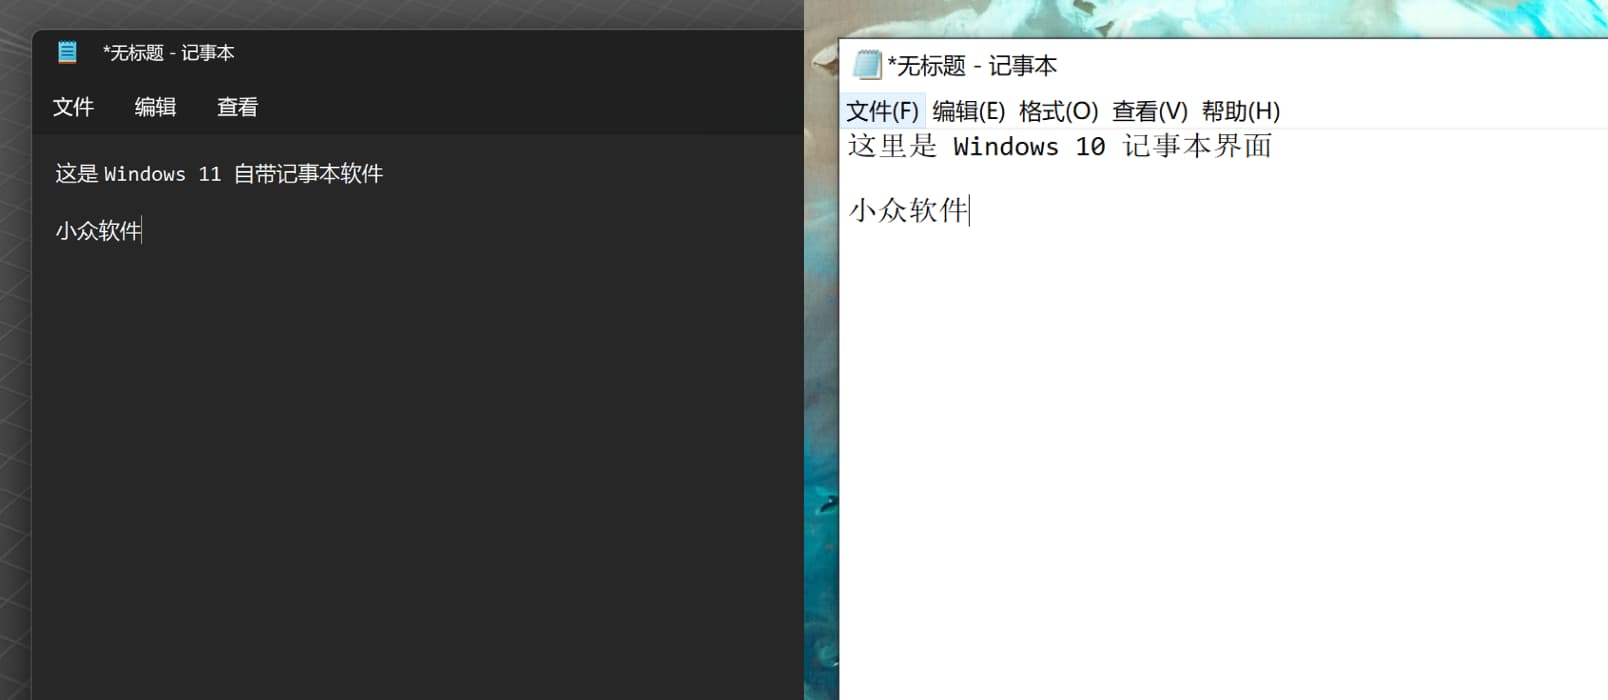 记事本++ 高仿 Windows 内置记事本软件[macOS] 1